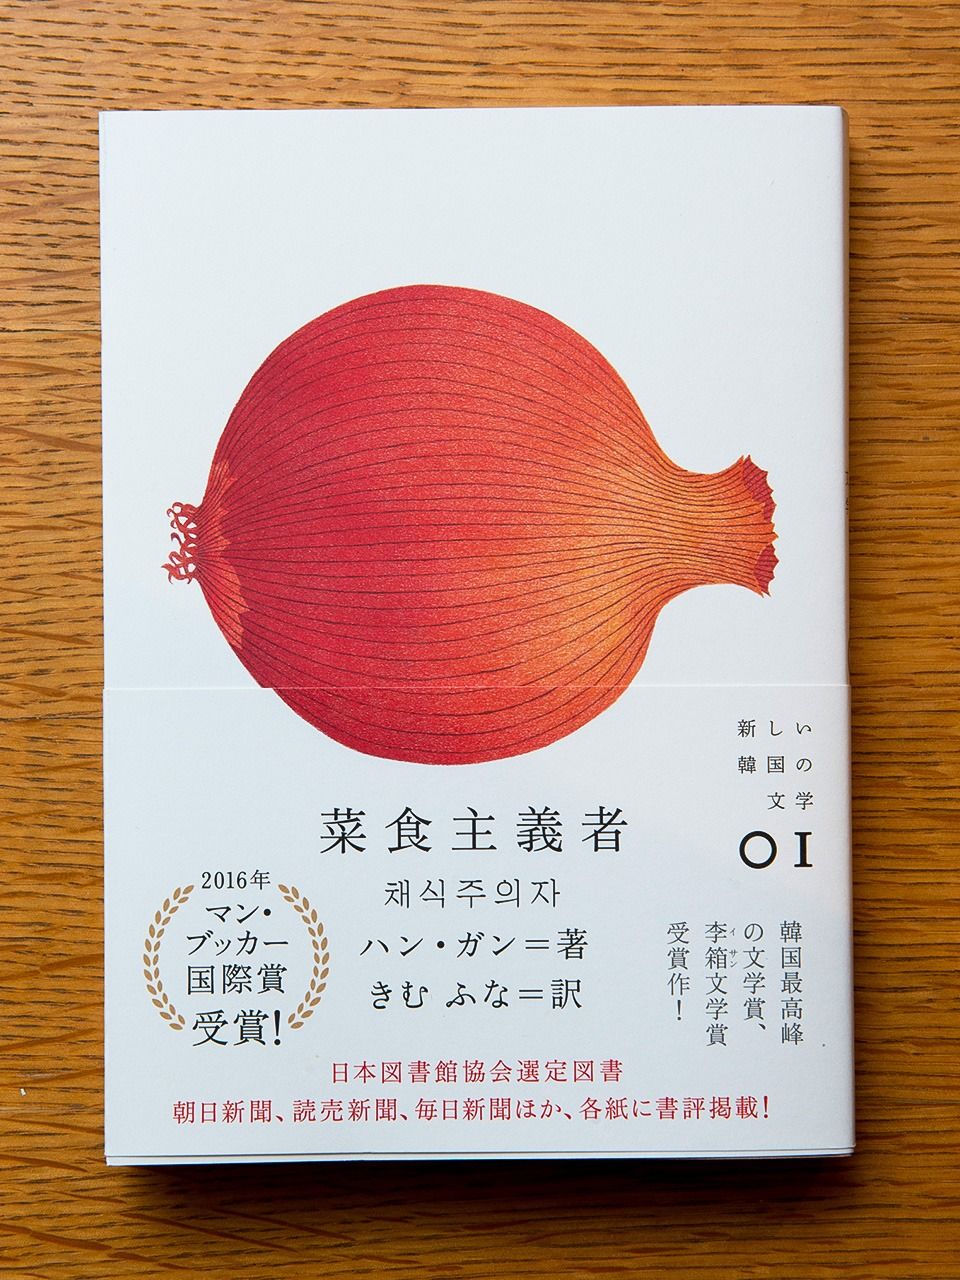 書本的裝幀由人氣設計師寄藤文平與鈴木佳子操刀。簡單又具有現代感的封面設計受到年輕一代的廣大支持。